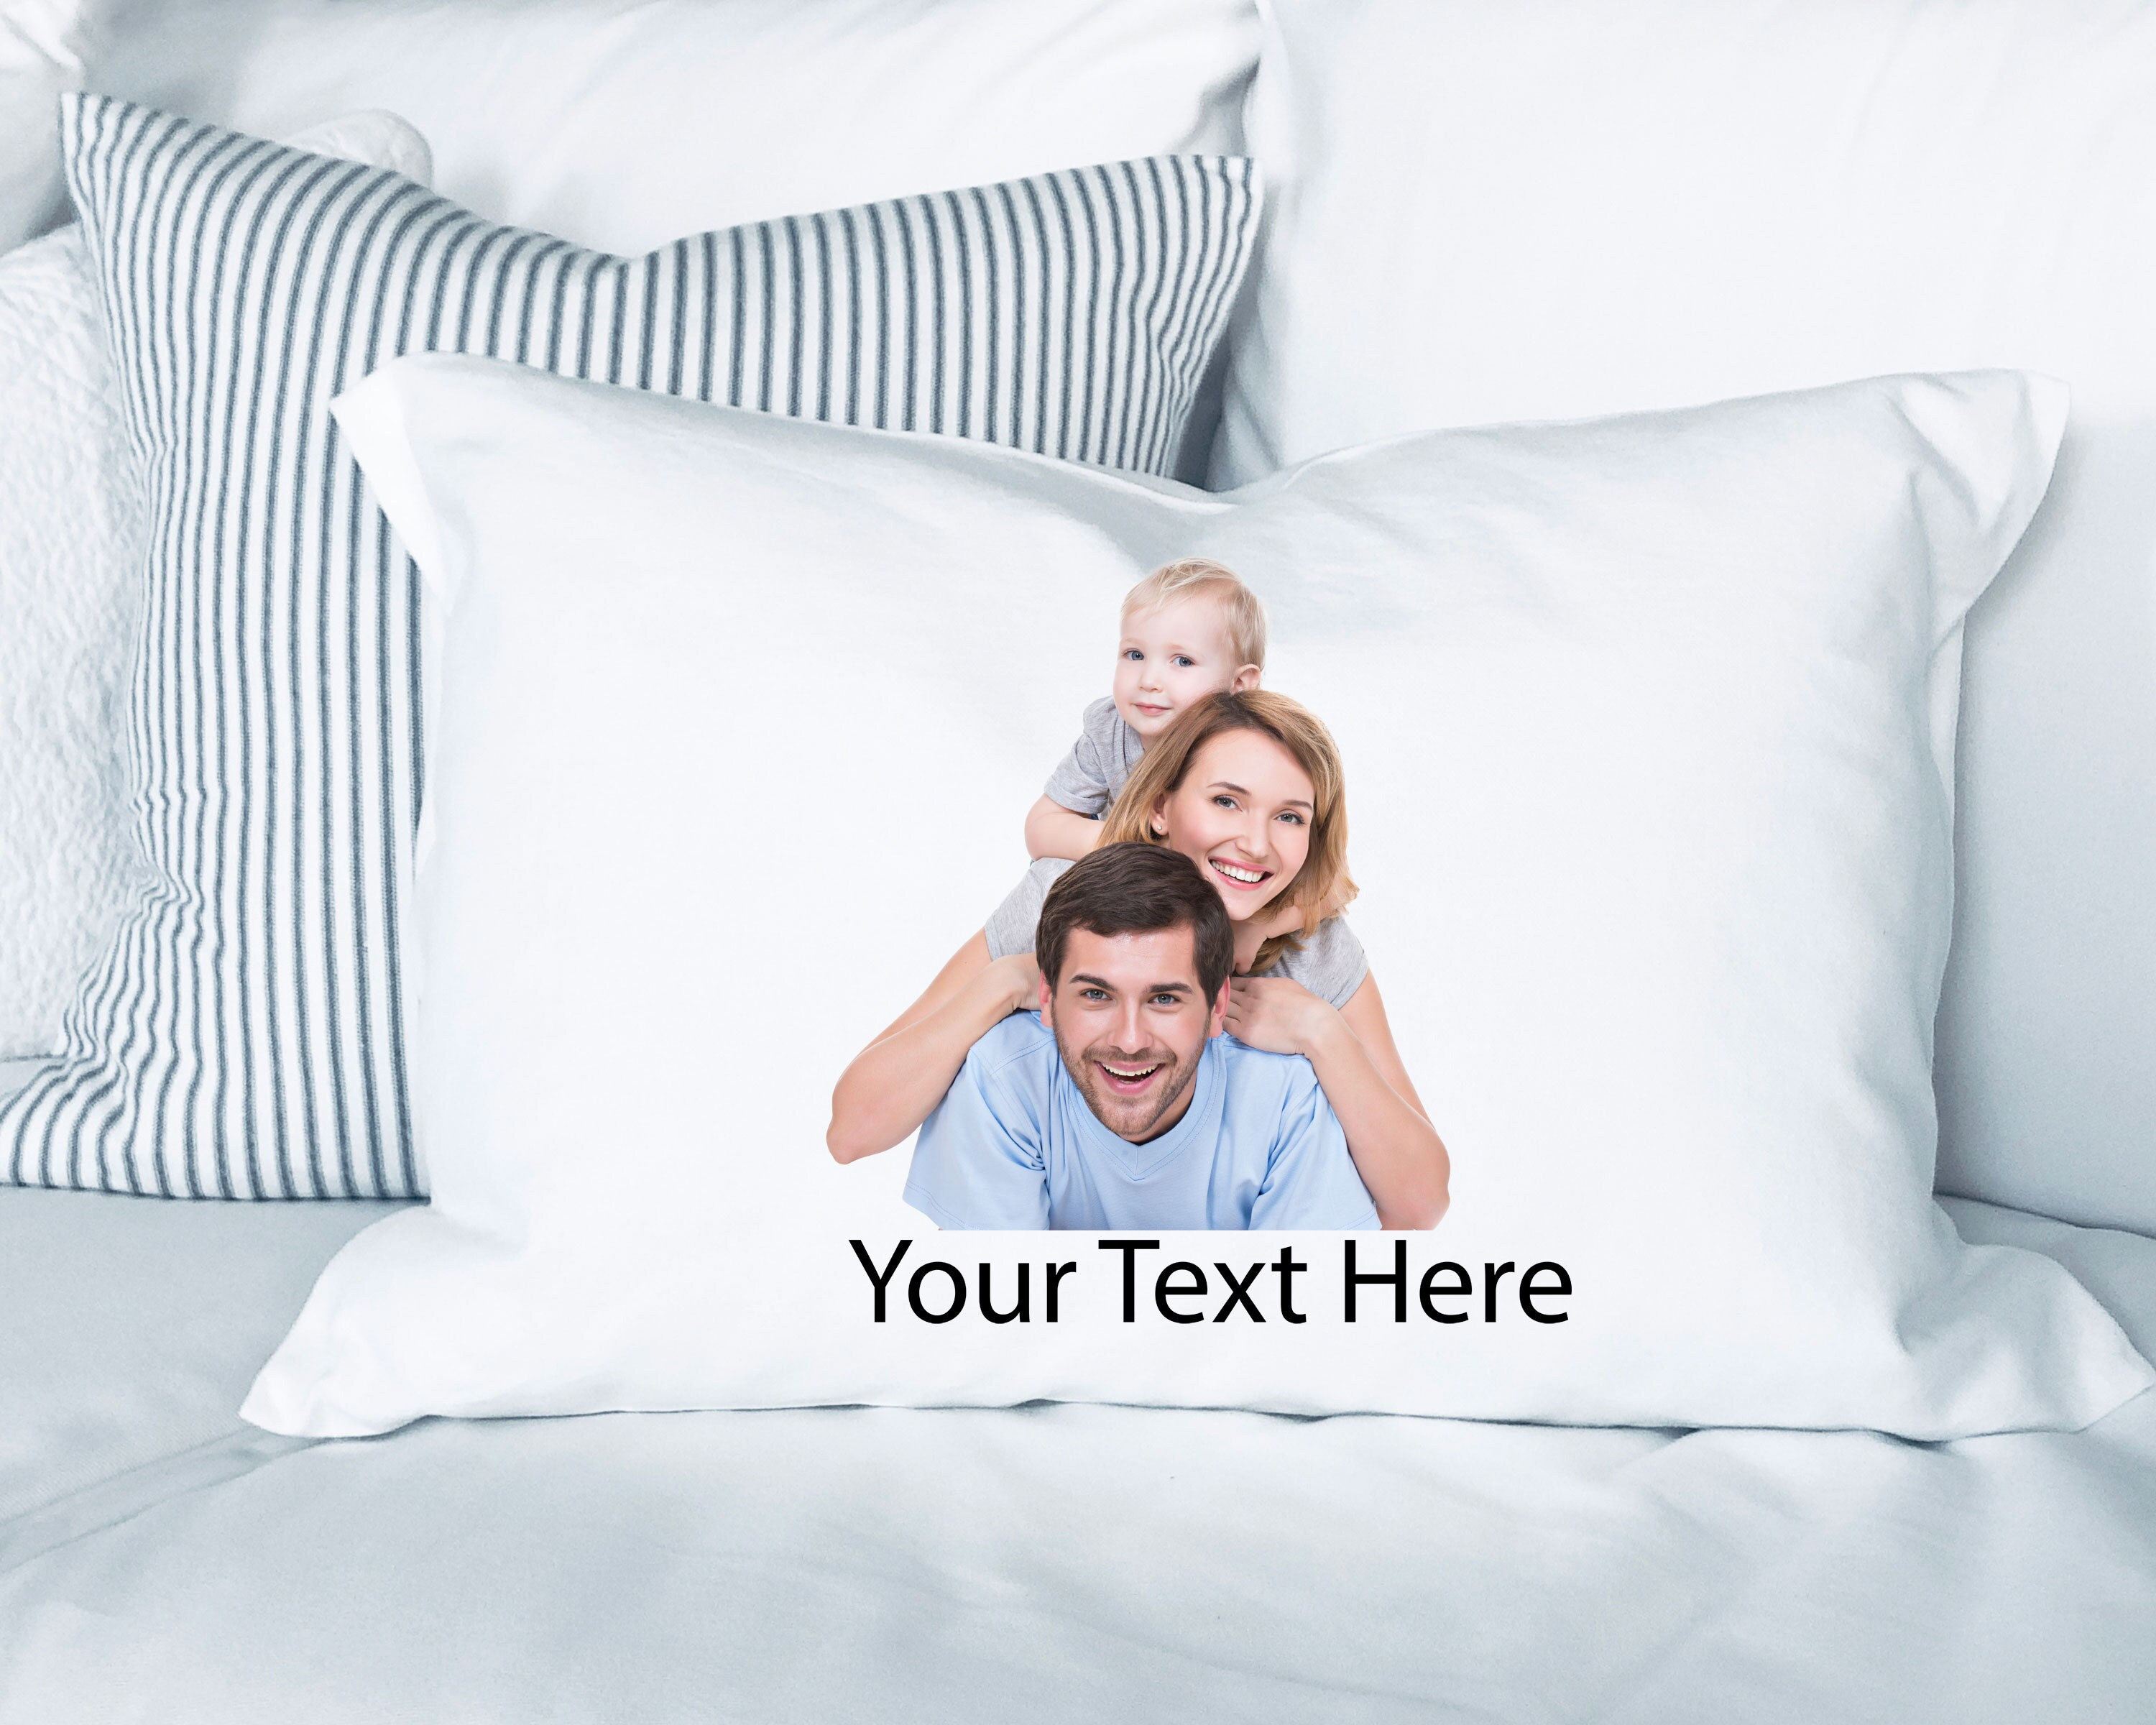 Custom Pillow, Custom Text Pillow, Customize Pillow, Personalized